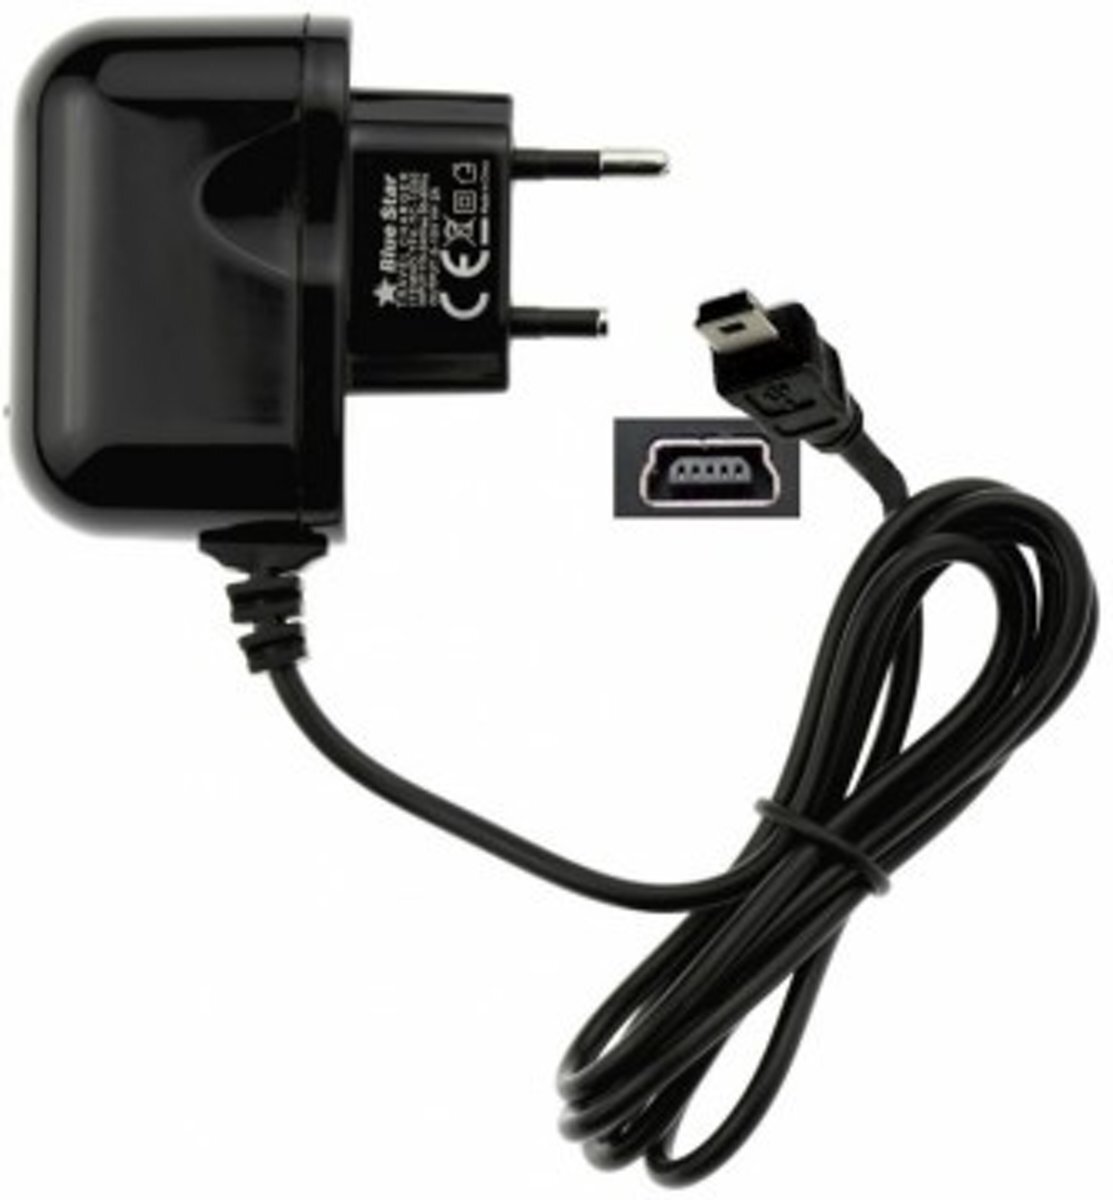 ABC-LED Oplader 220V voor TomTom GO 950 - 2 ampere lader